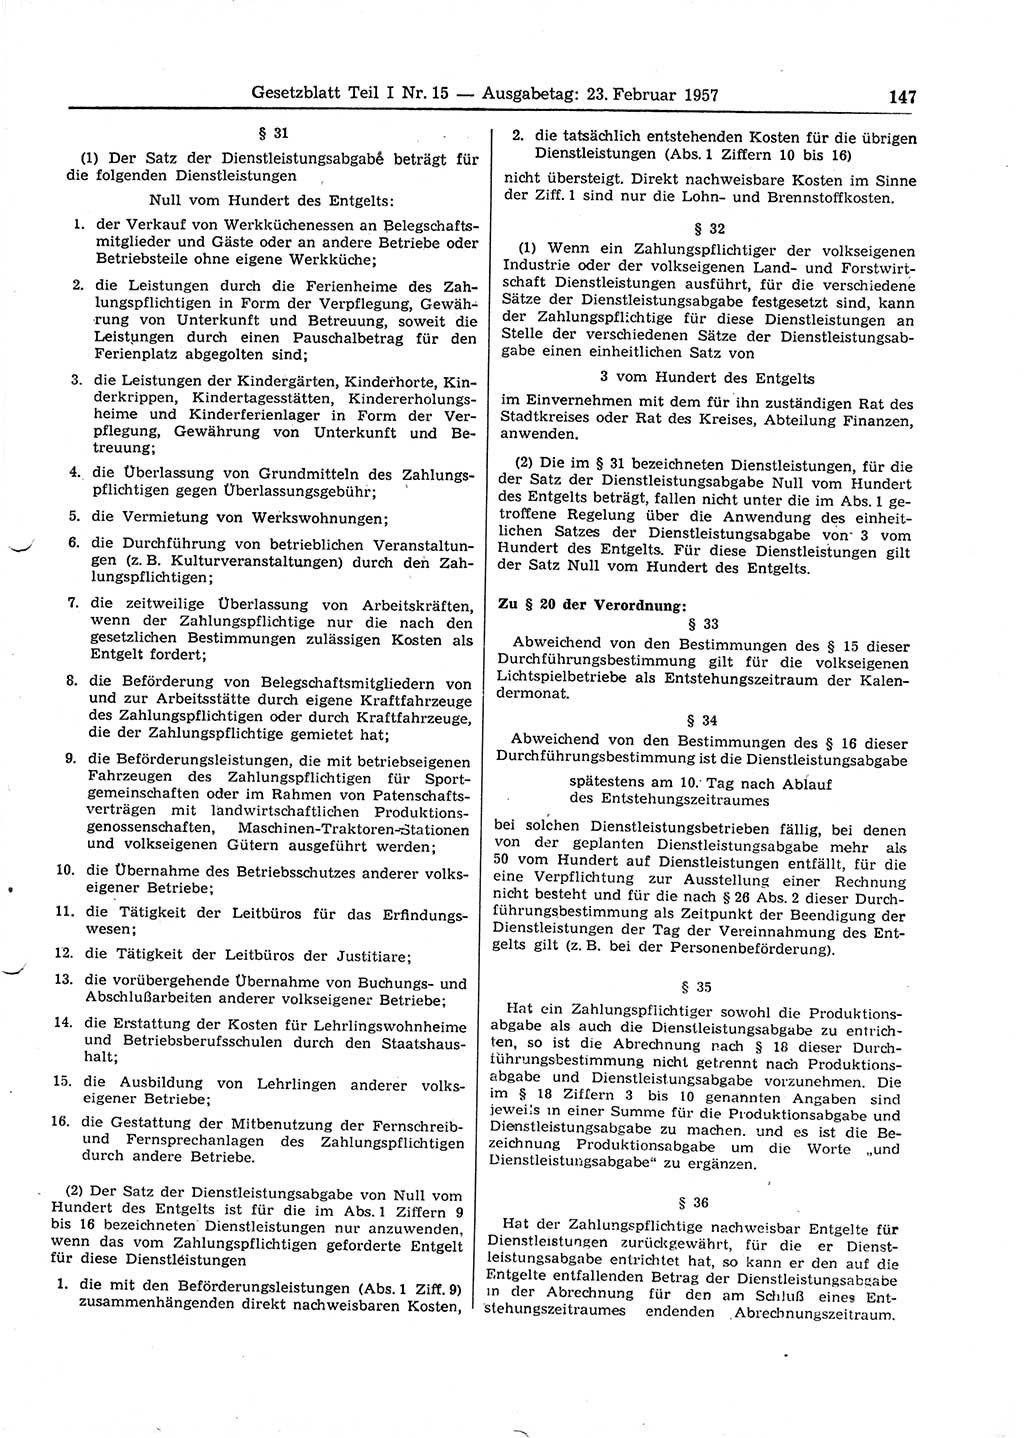 Gesetzblatt (GBl.) der Deutschen Demokratischen Republik (DDR) Teil Ⅰ 1957, Seite 147 (GBl. DDR Ⅰ 1957, S. 147)